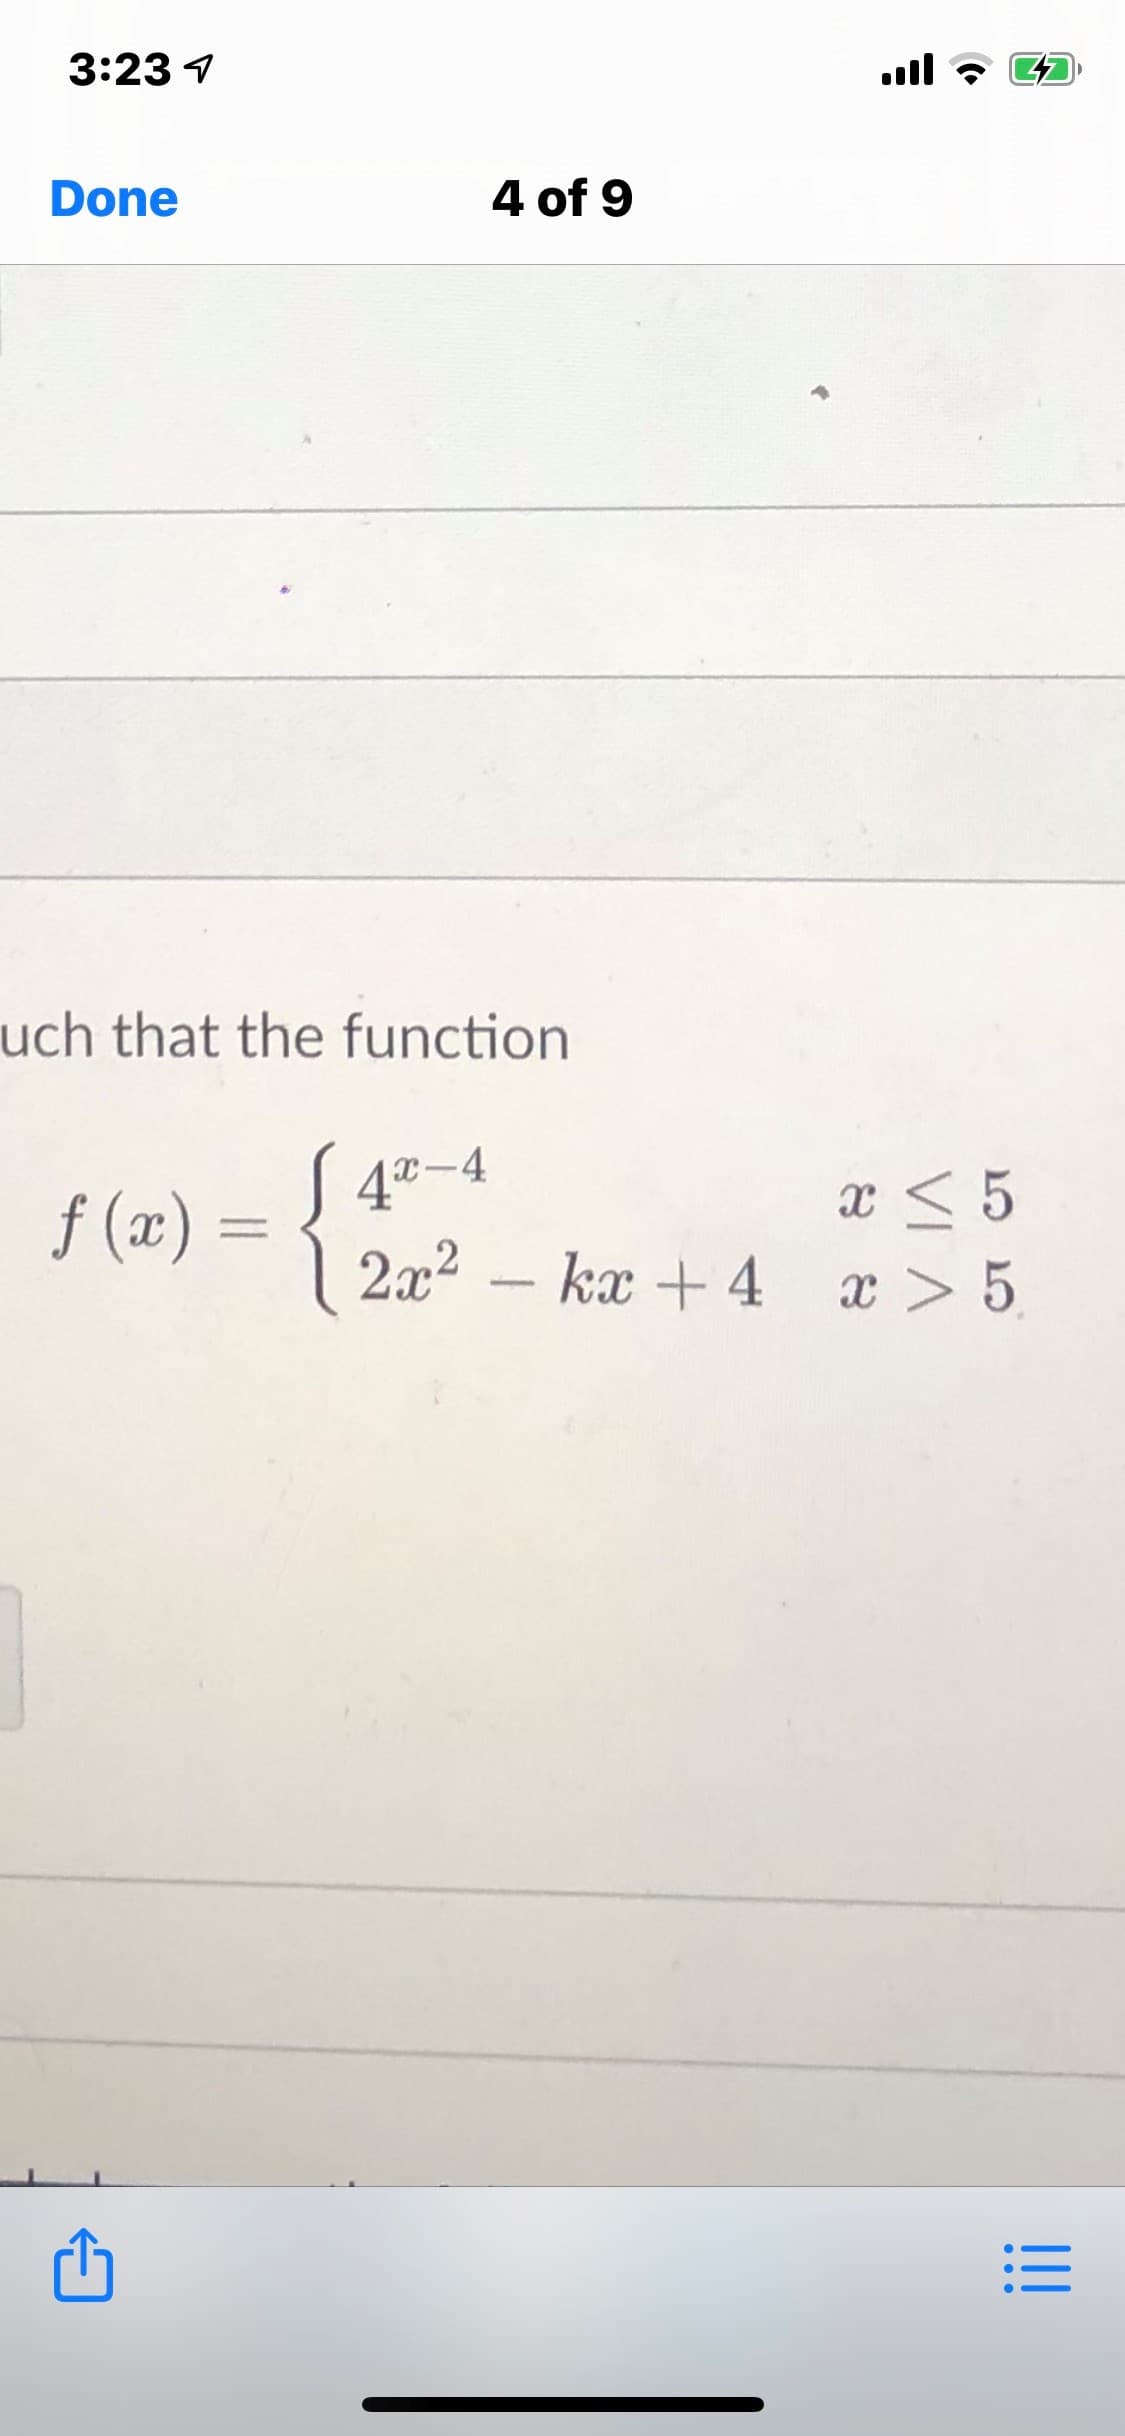 ch that the function
X-4
x < 5
| 2x2 – kx + 4 x > 5.
f (x) =
